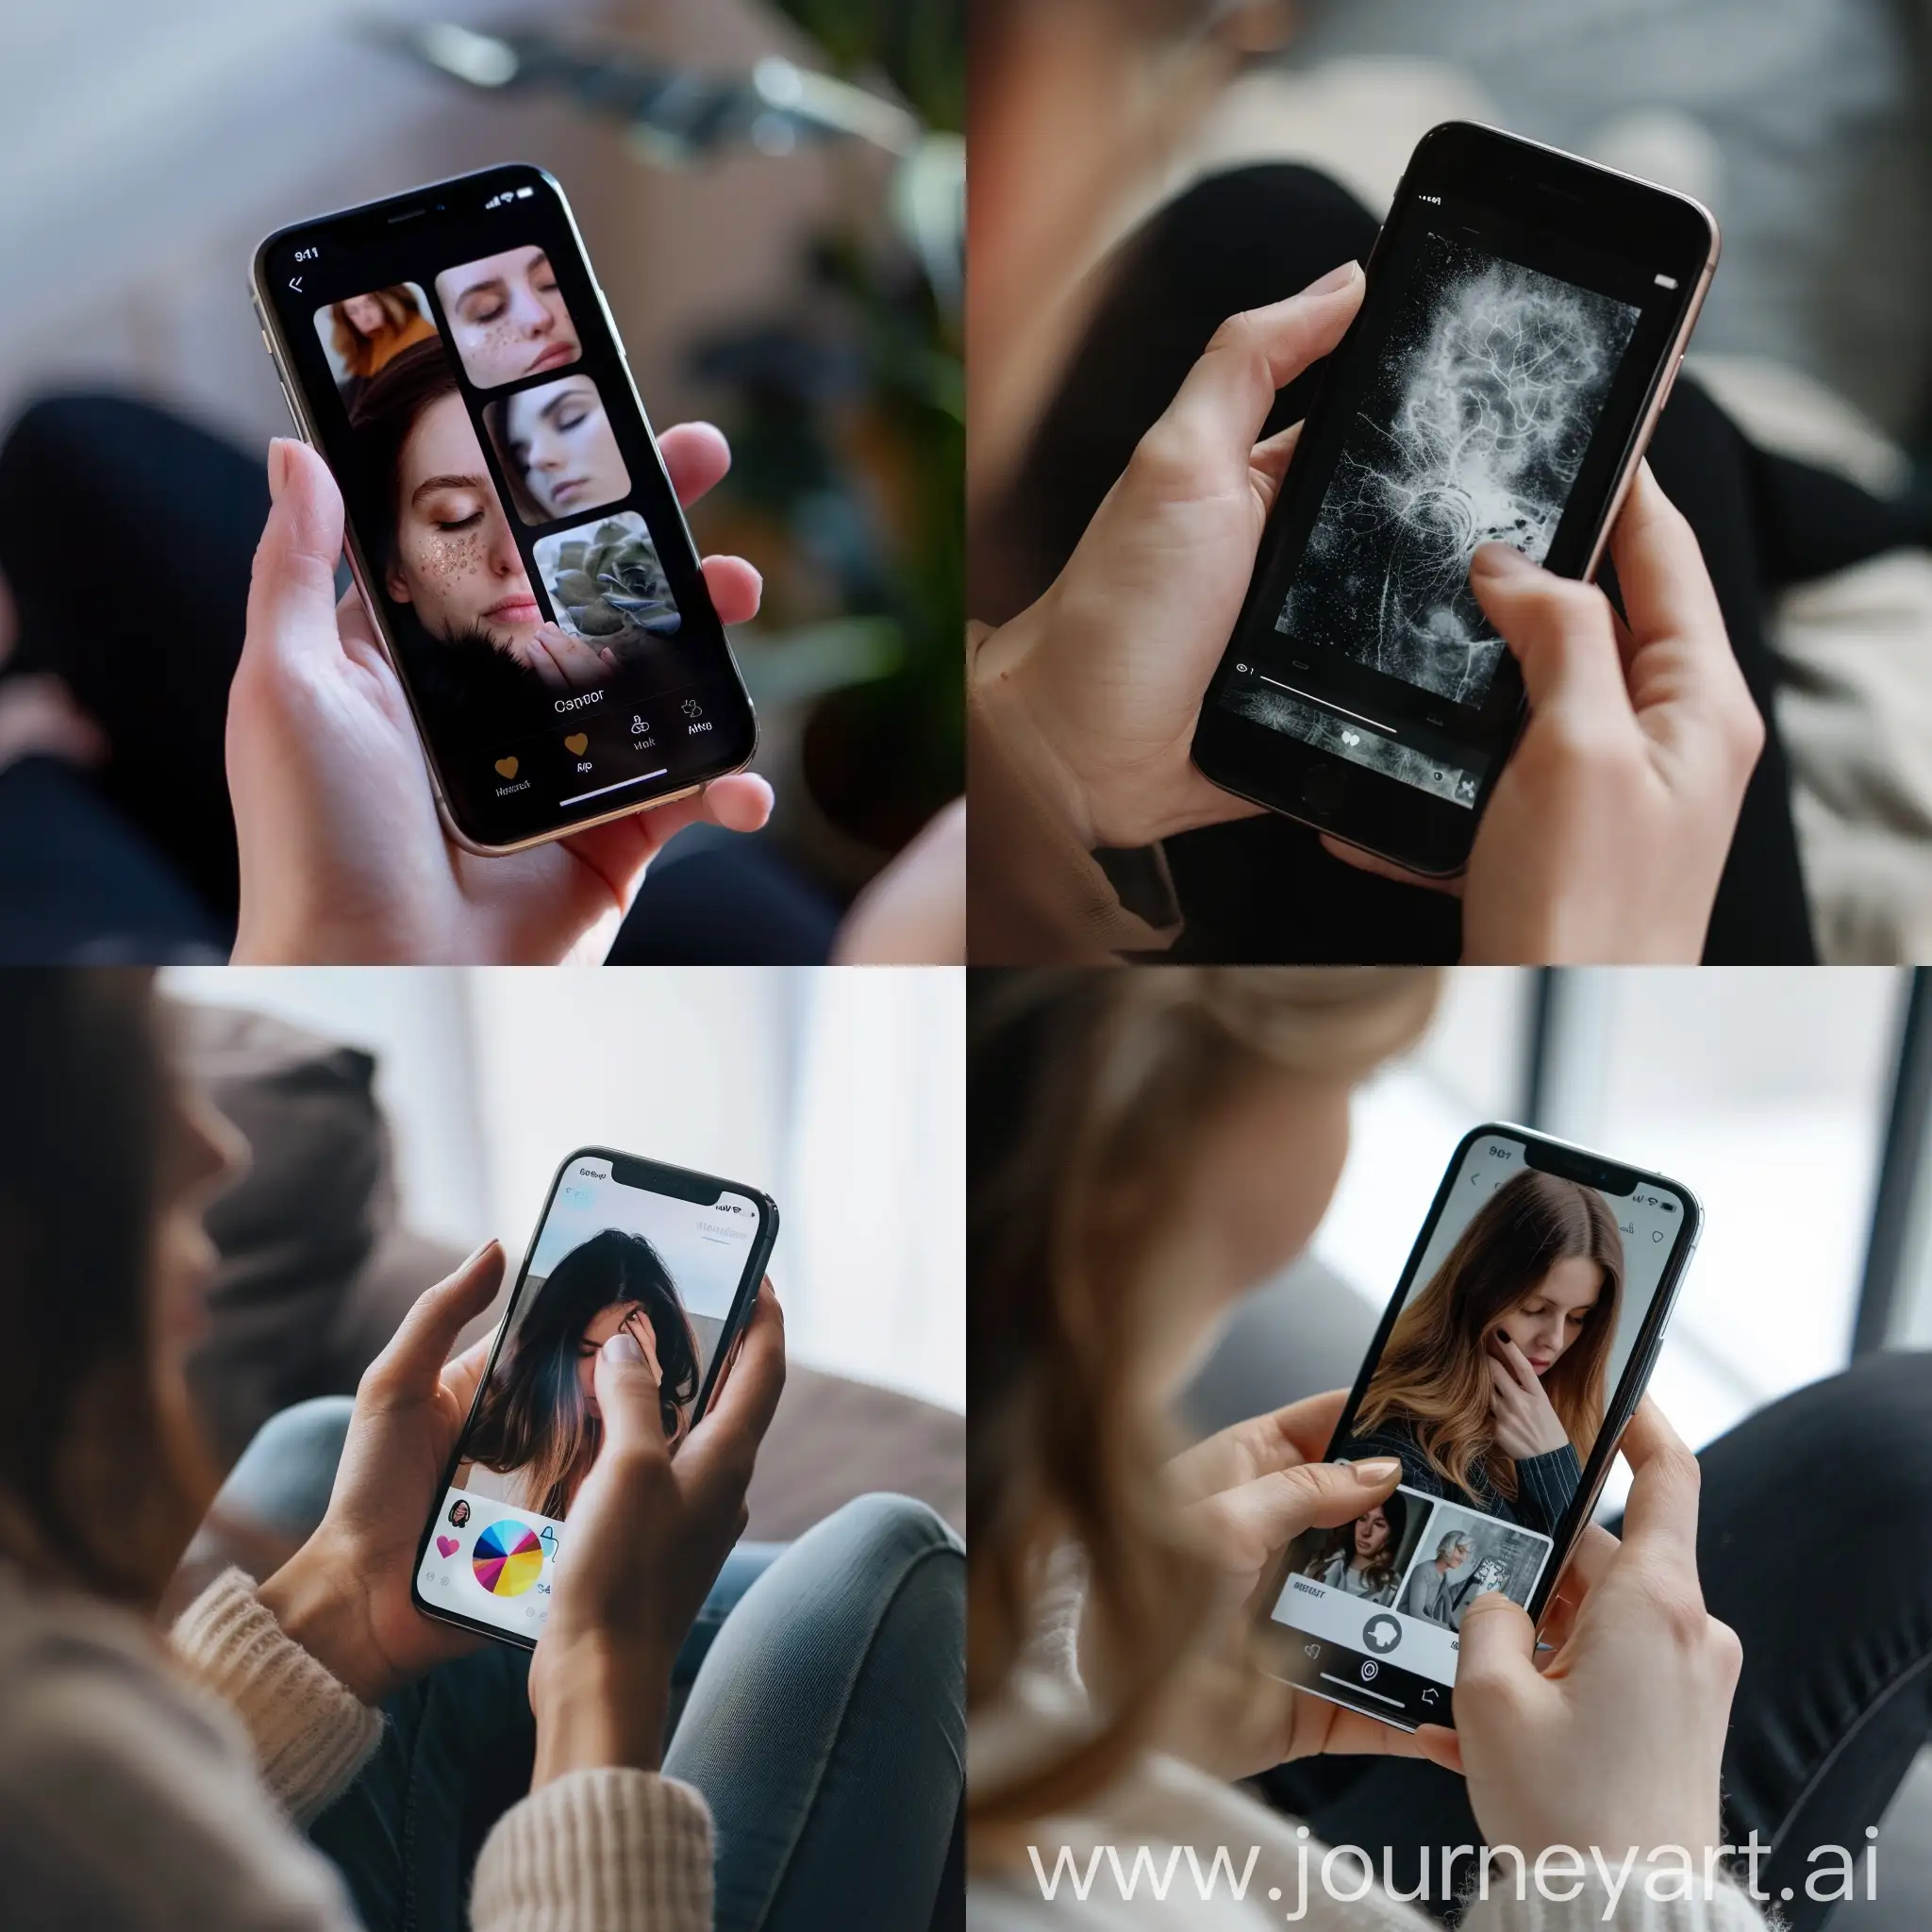 fotos para crear una app en iphone acerca de salud mental